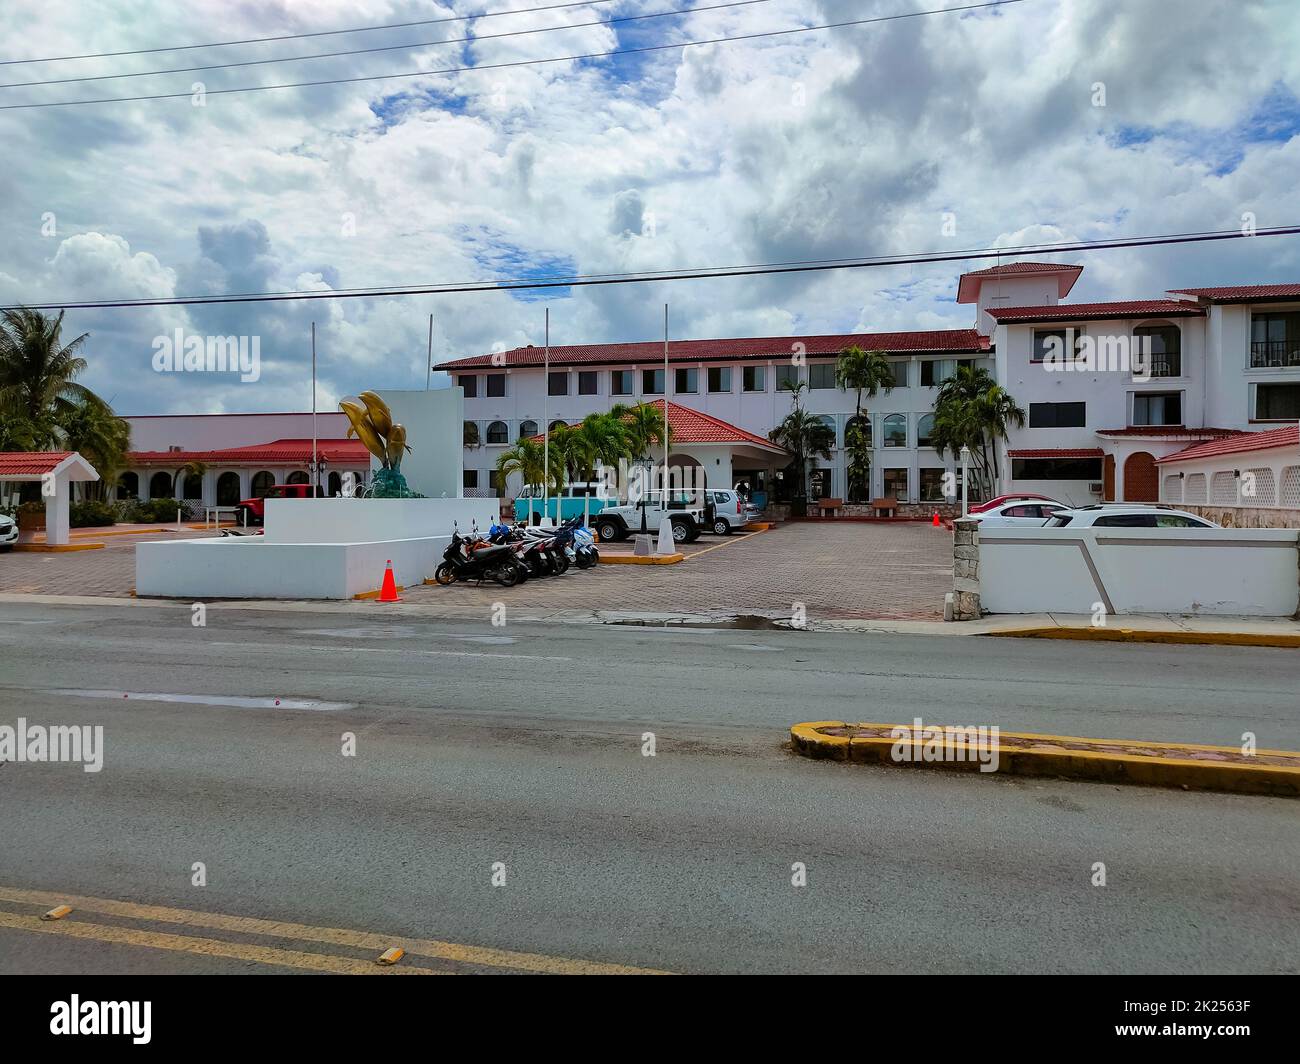 Cozumel, Messico - 04 maggio 2022: Vista della strada di giorno con vetrine del negozio di automobili a Cozumel, Messico. Oggi l'isola è una delle più importanti mete turistiche messicane Foto Stock